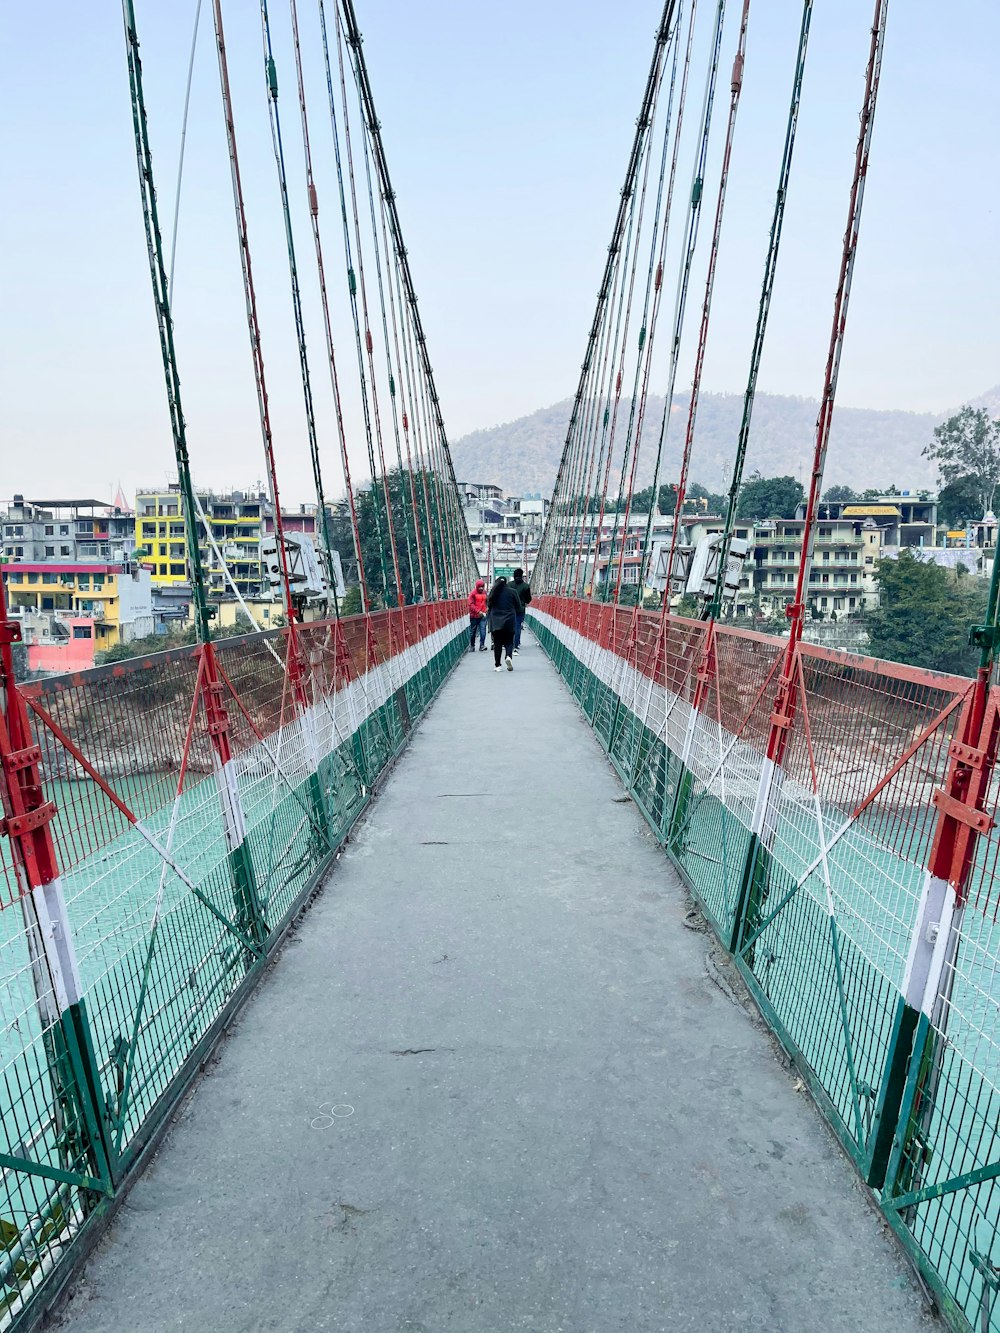 person in black jacket walking on red metal bridge during daytime